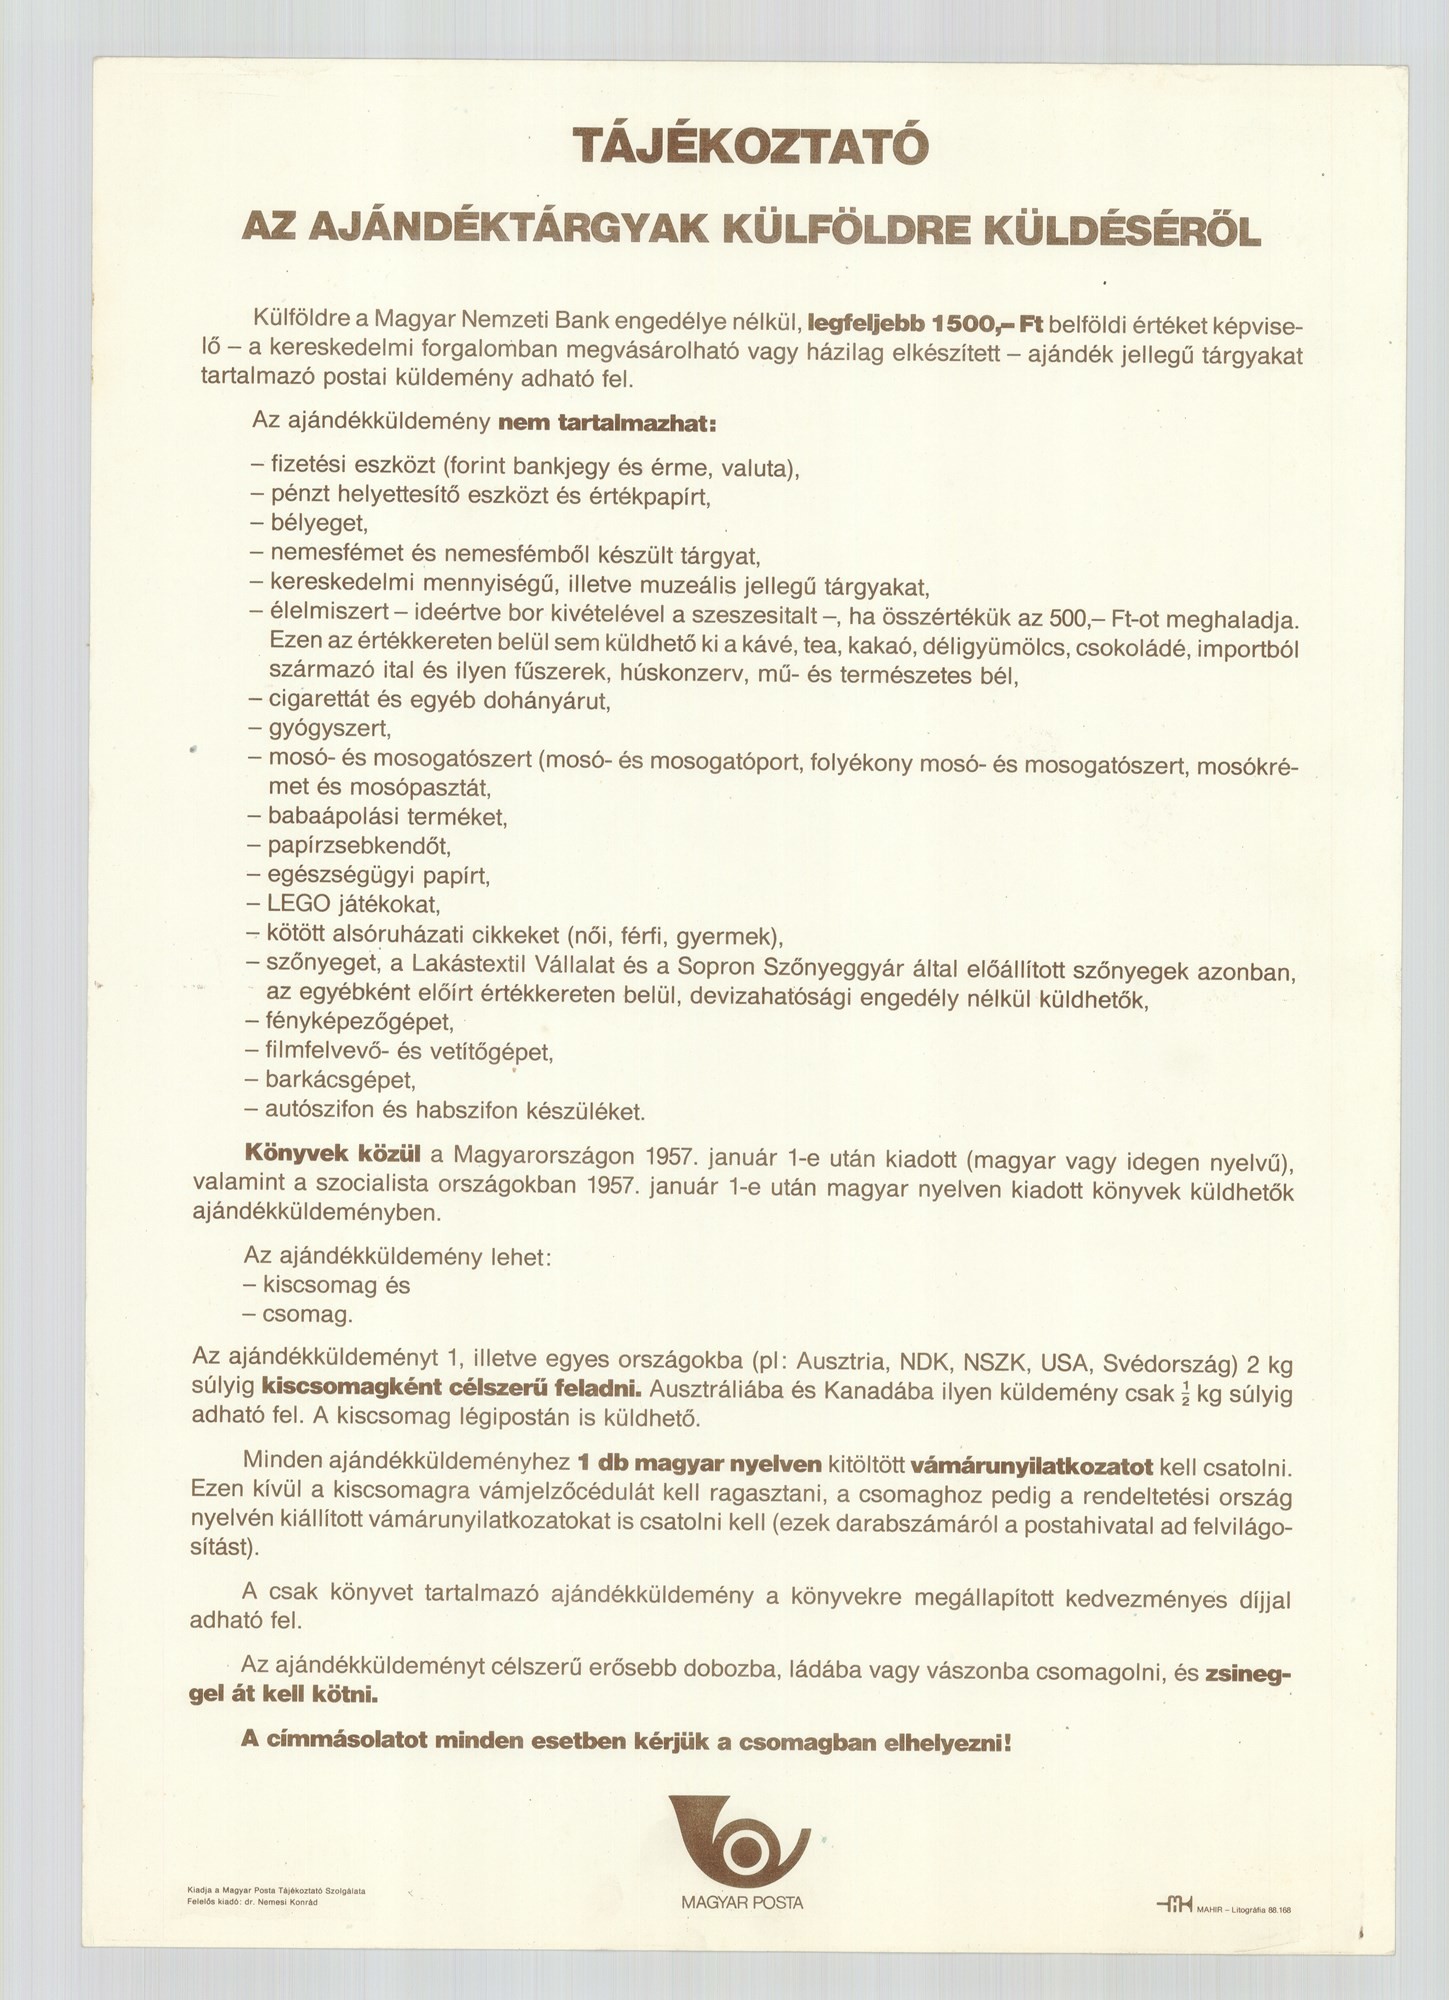 Szöveges plakát - Tájékoztató külföldre küldésről, 1988 (Postamúzeum CC BY-NC-SA)